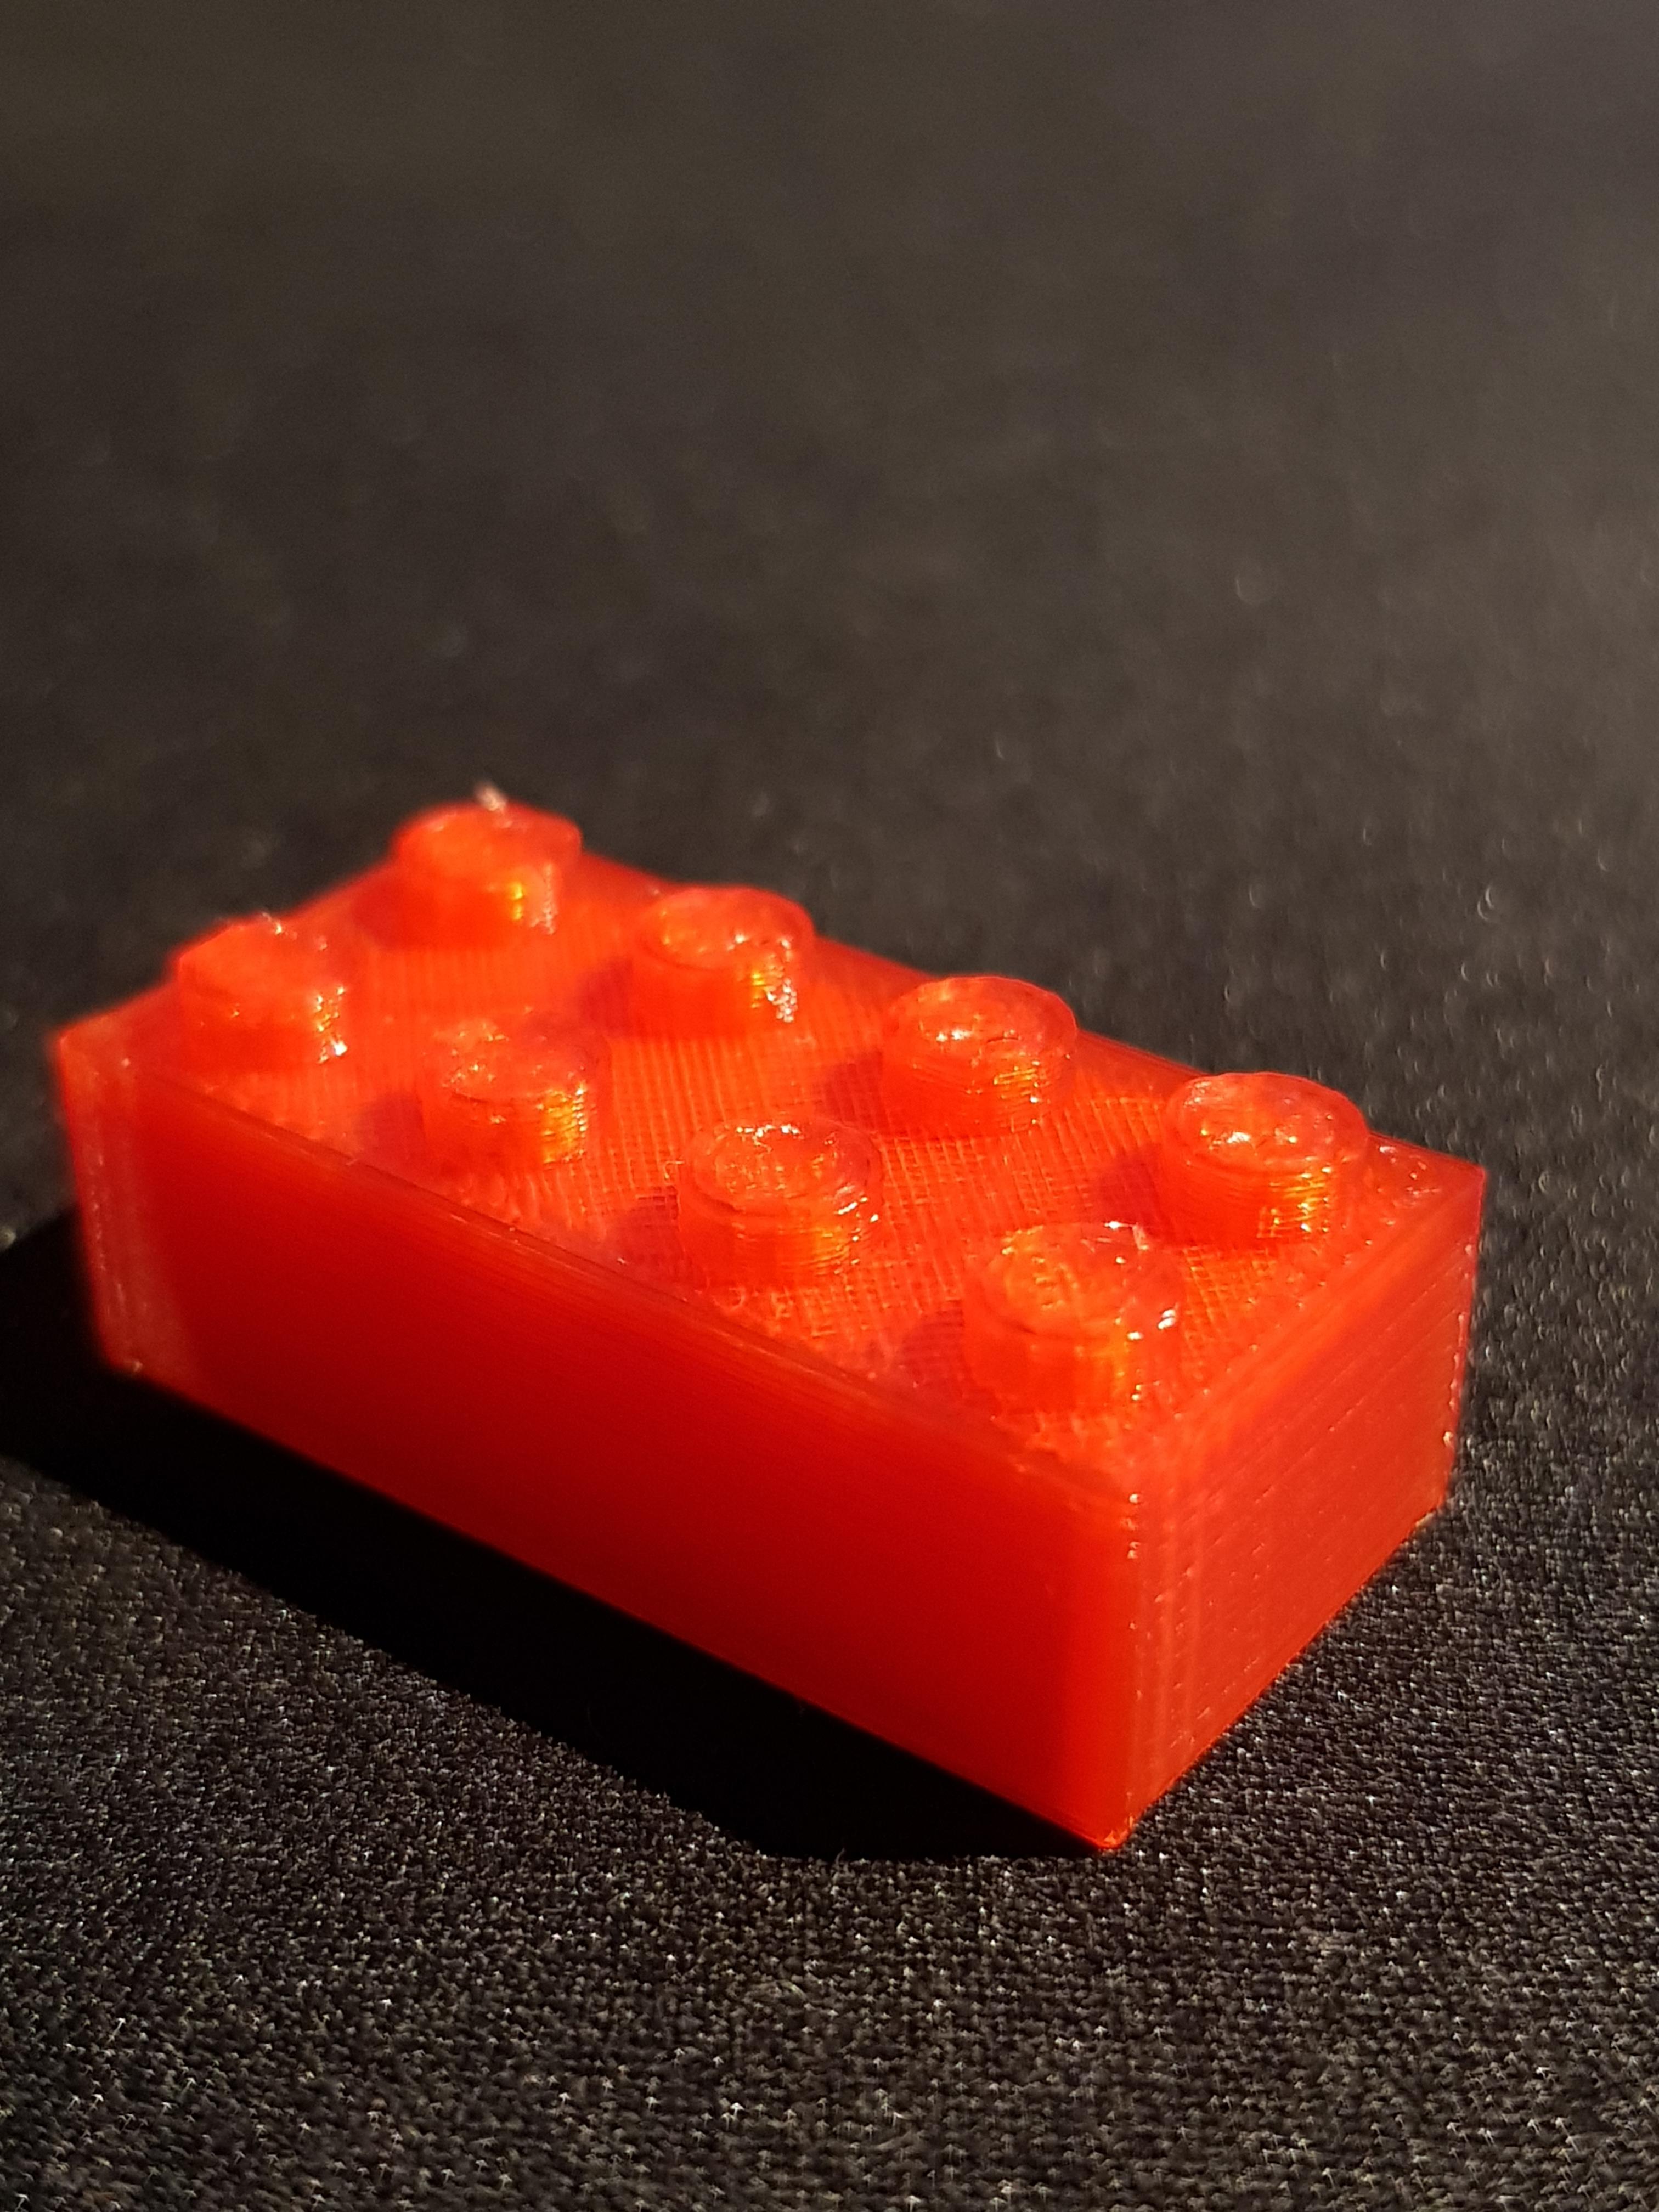 3D Printable Lego bricks by Rayyan Amir